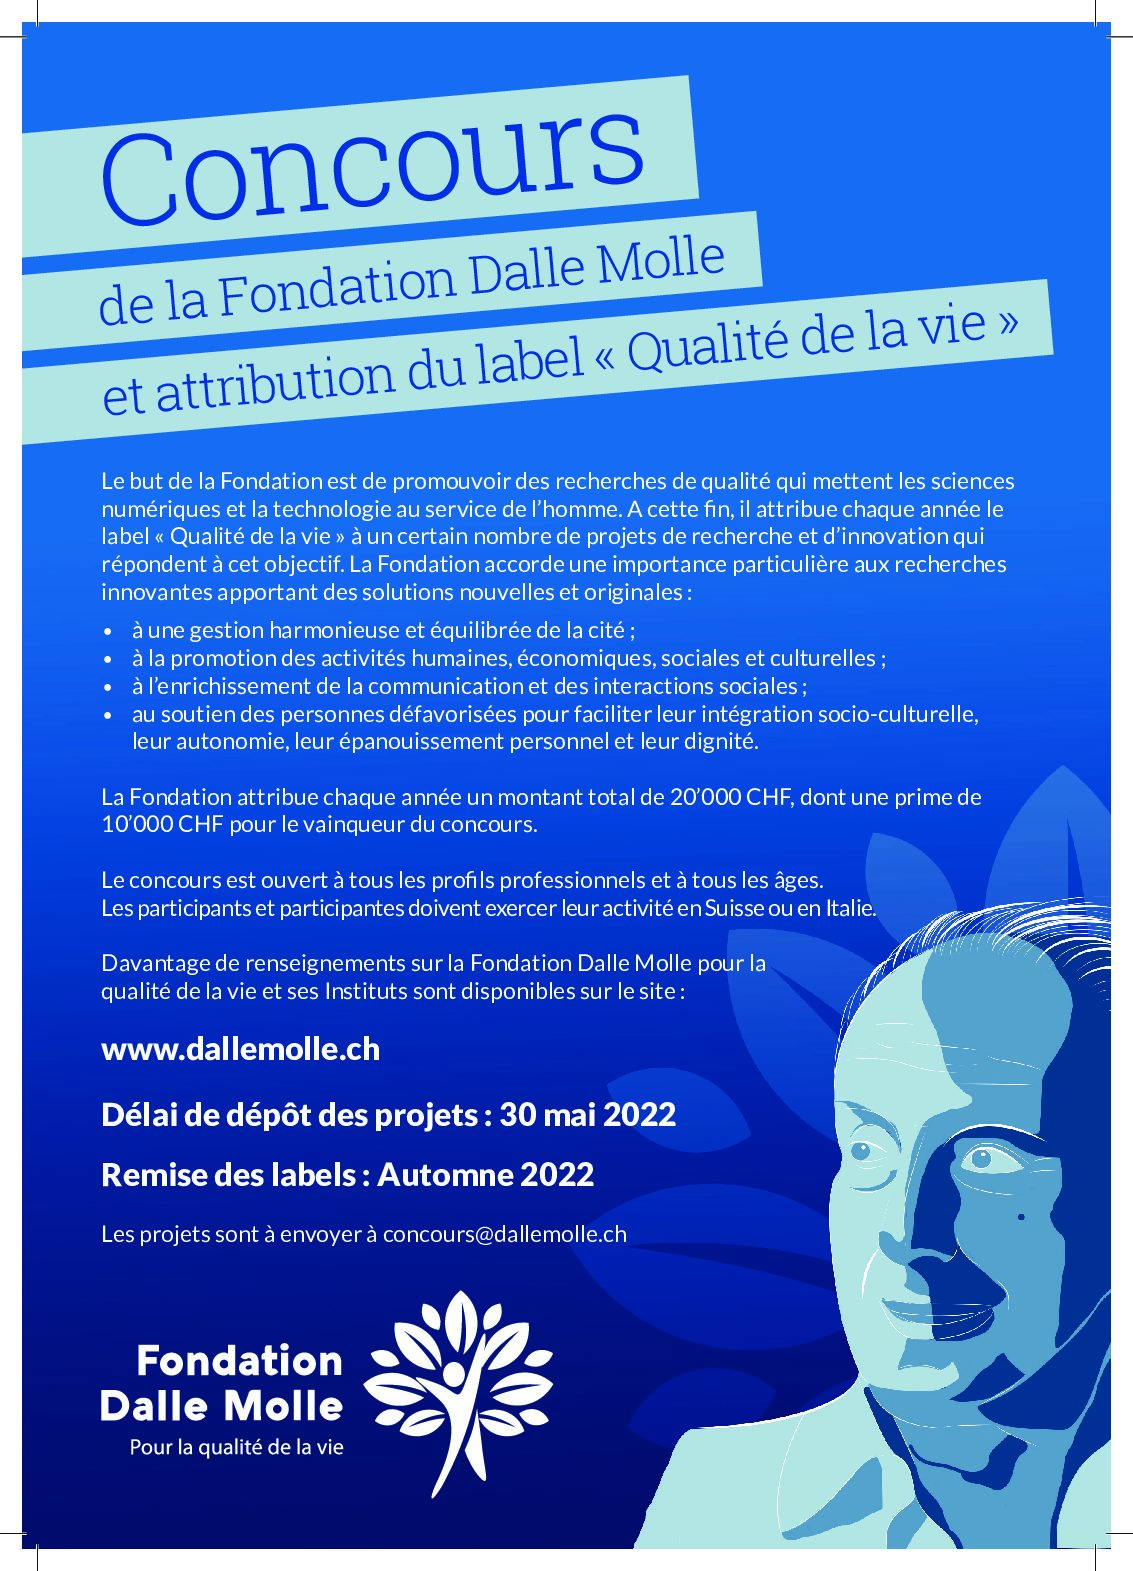 Ouverture du concours 2022 de la Fondation Dalle Molle pour la qualité de la vie !